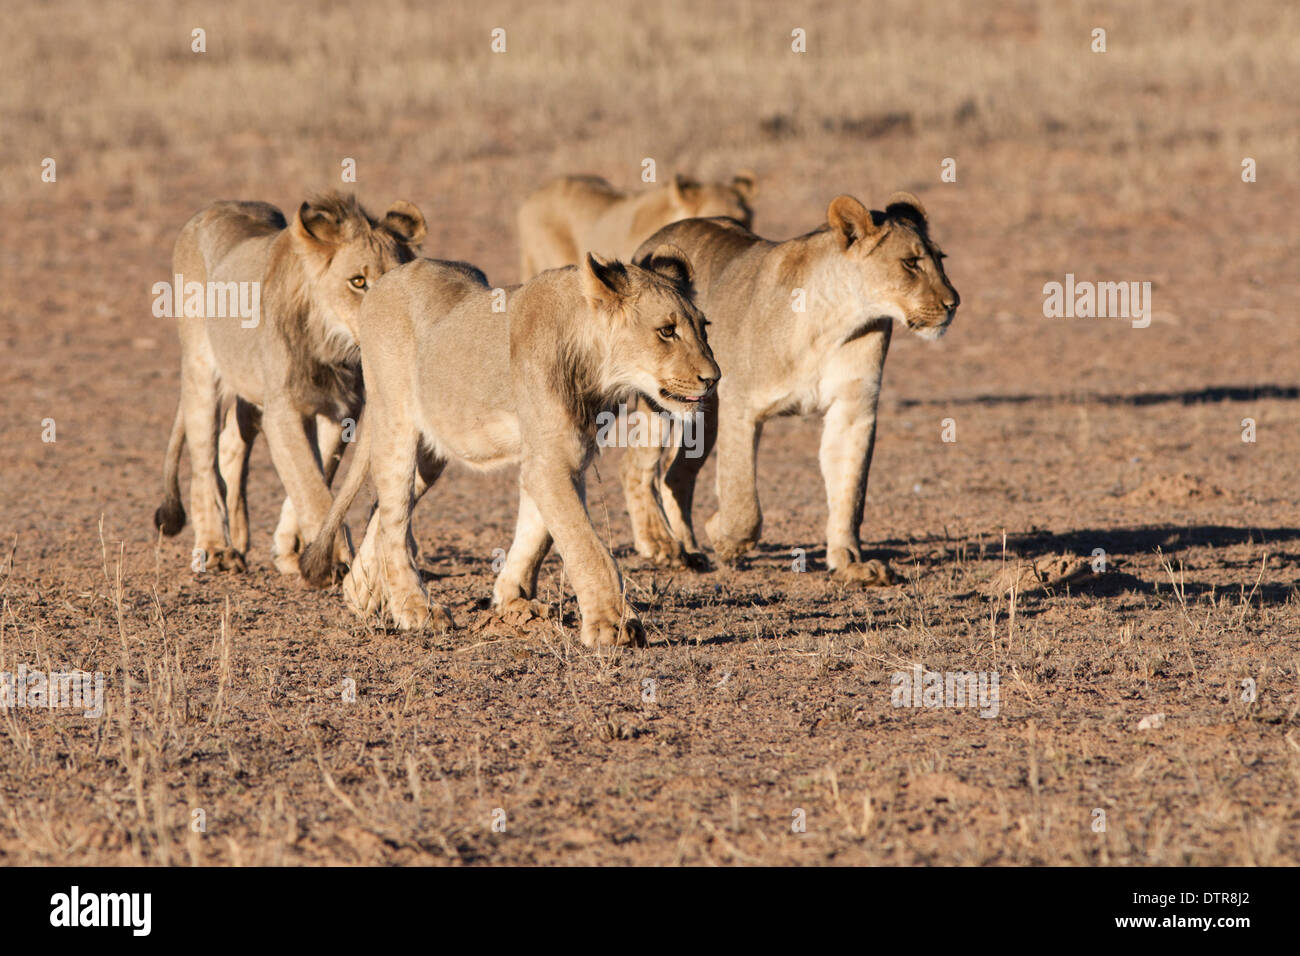 African Lion pride walking in the Kalahari desert Stock Photo